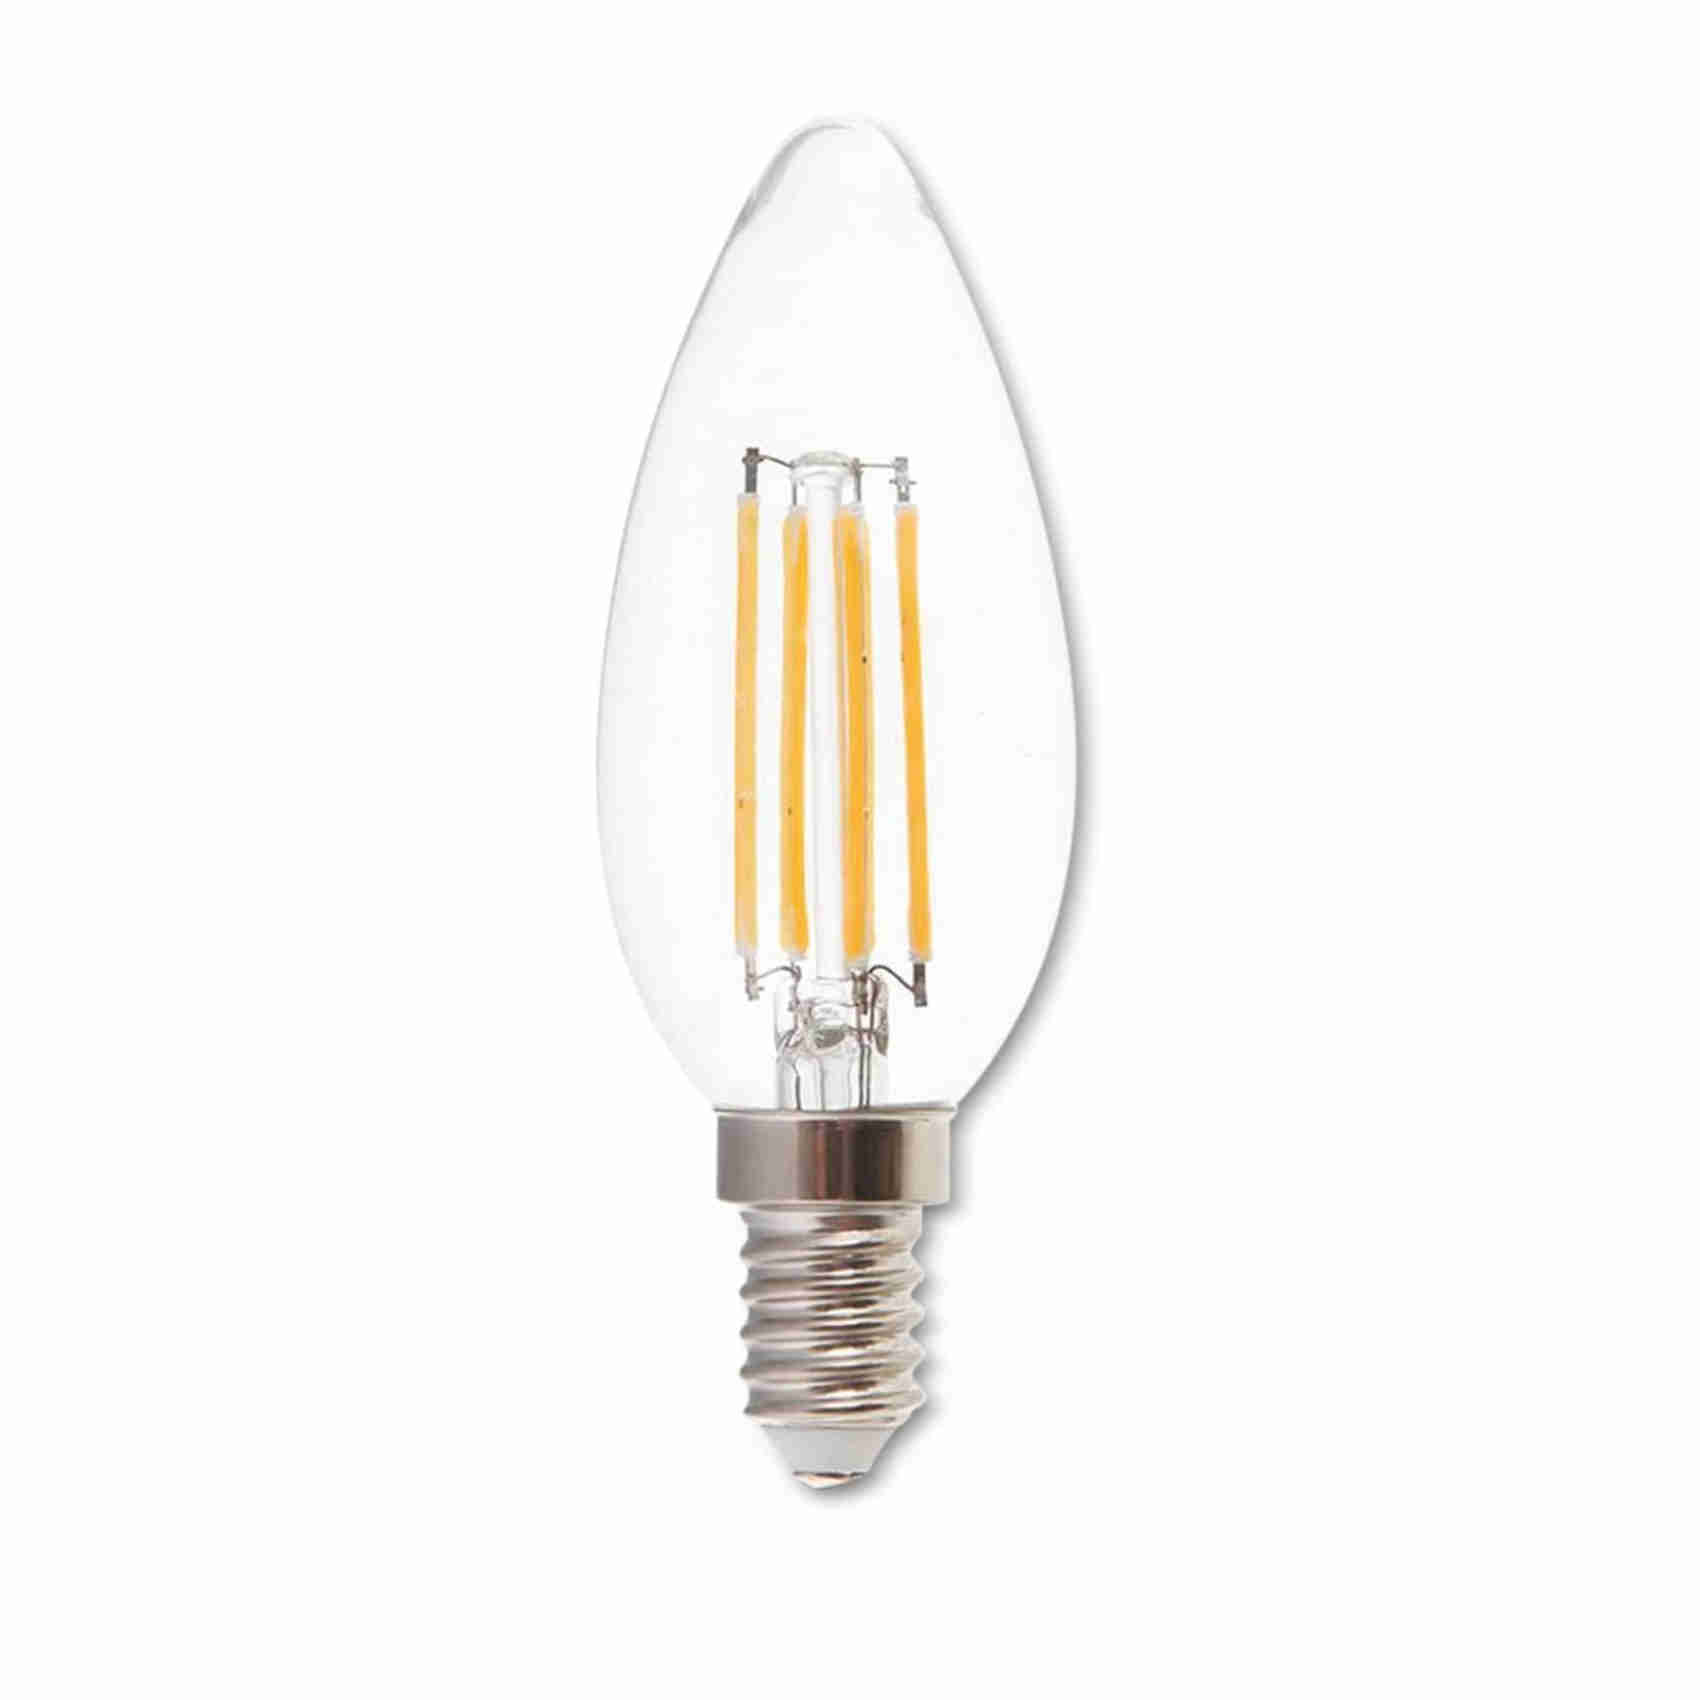 v-tac 10x lampadine led filamento candela con attacco e14-4w (equivalenti a 35w) - 400 lumen, 3000k luce bianca calda,1 pezzo. nero uomo